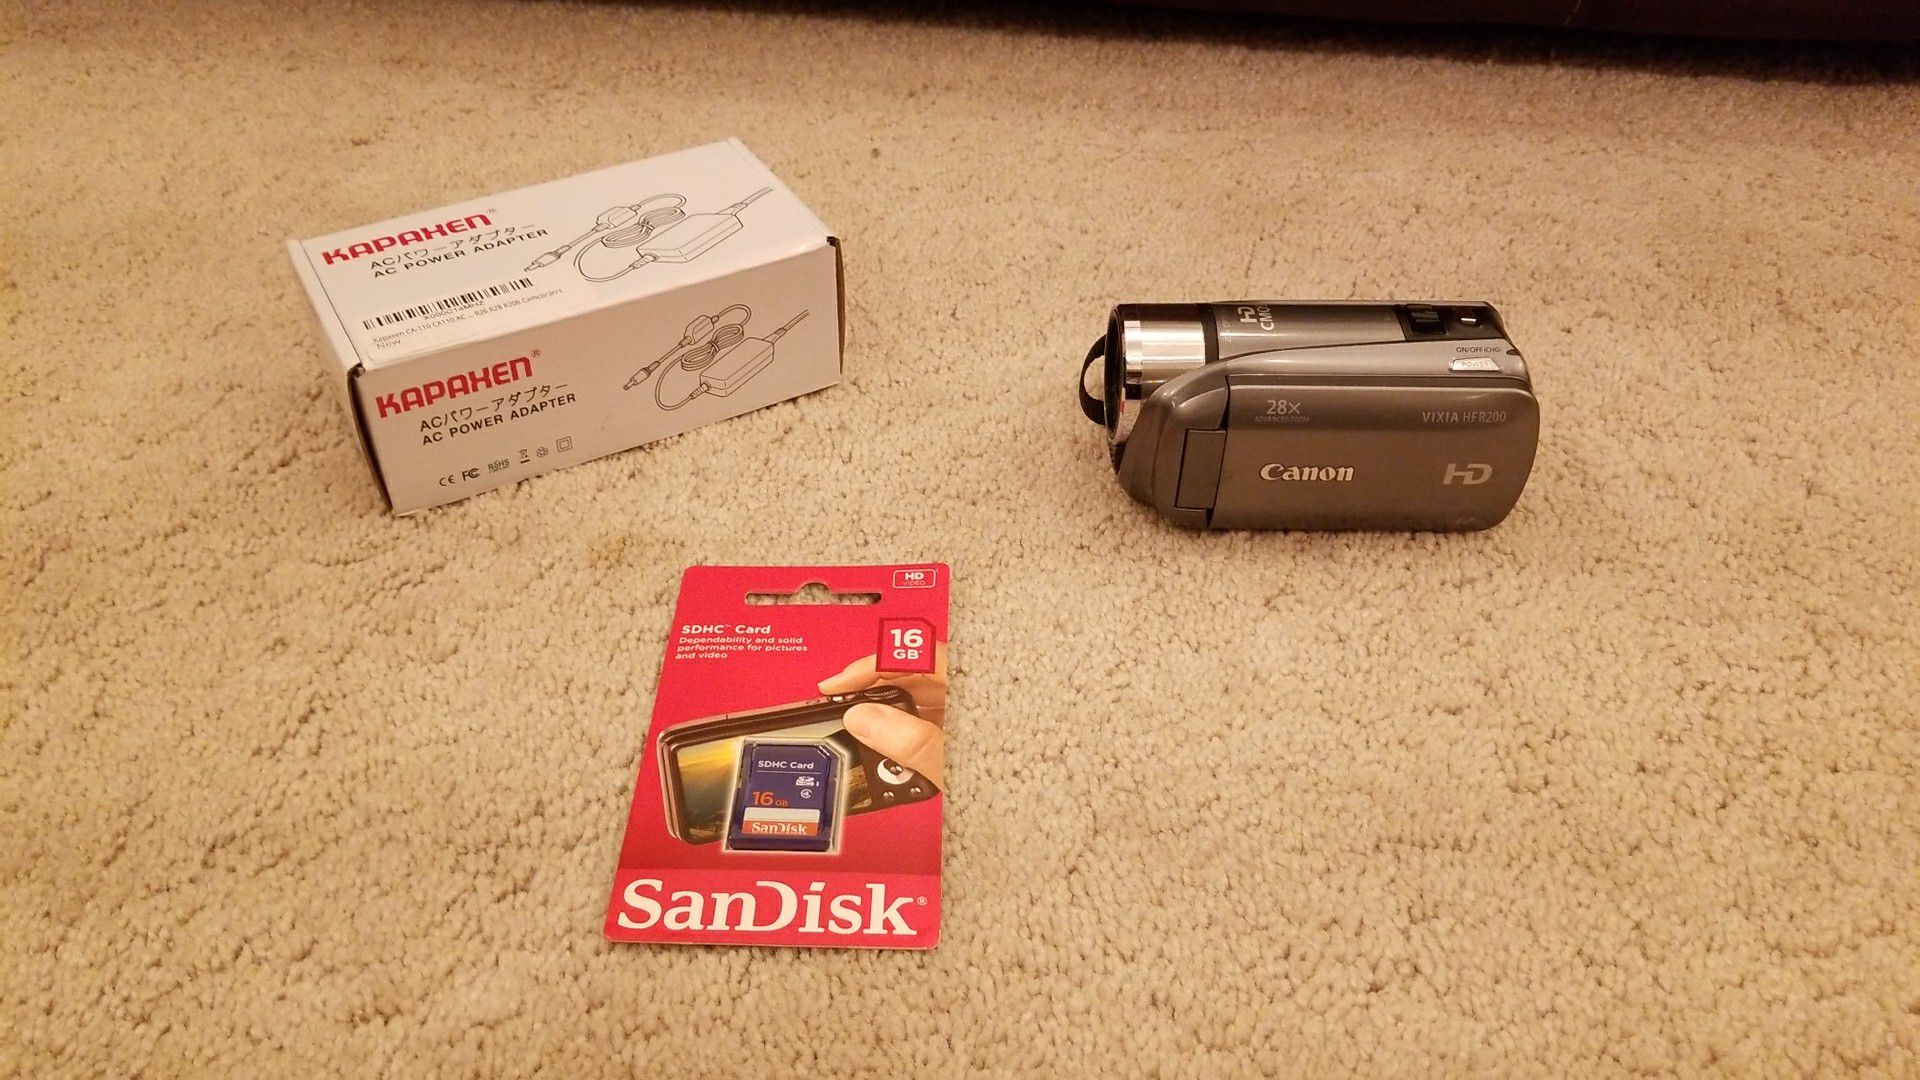 Canon vixia HFR 200 HD video camera with 16SD card